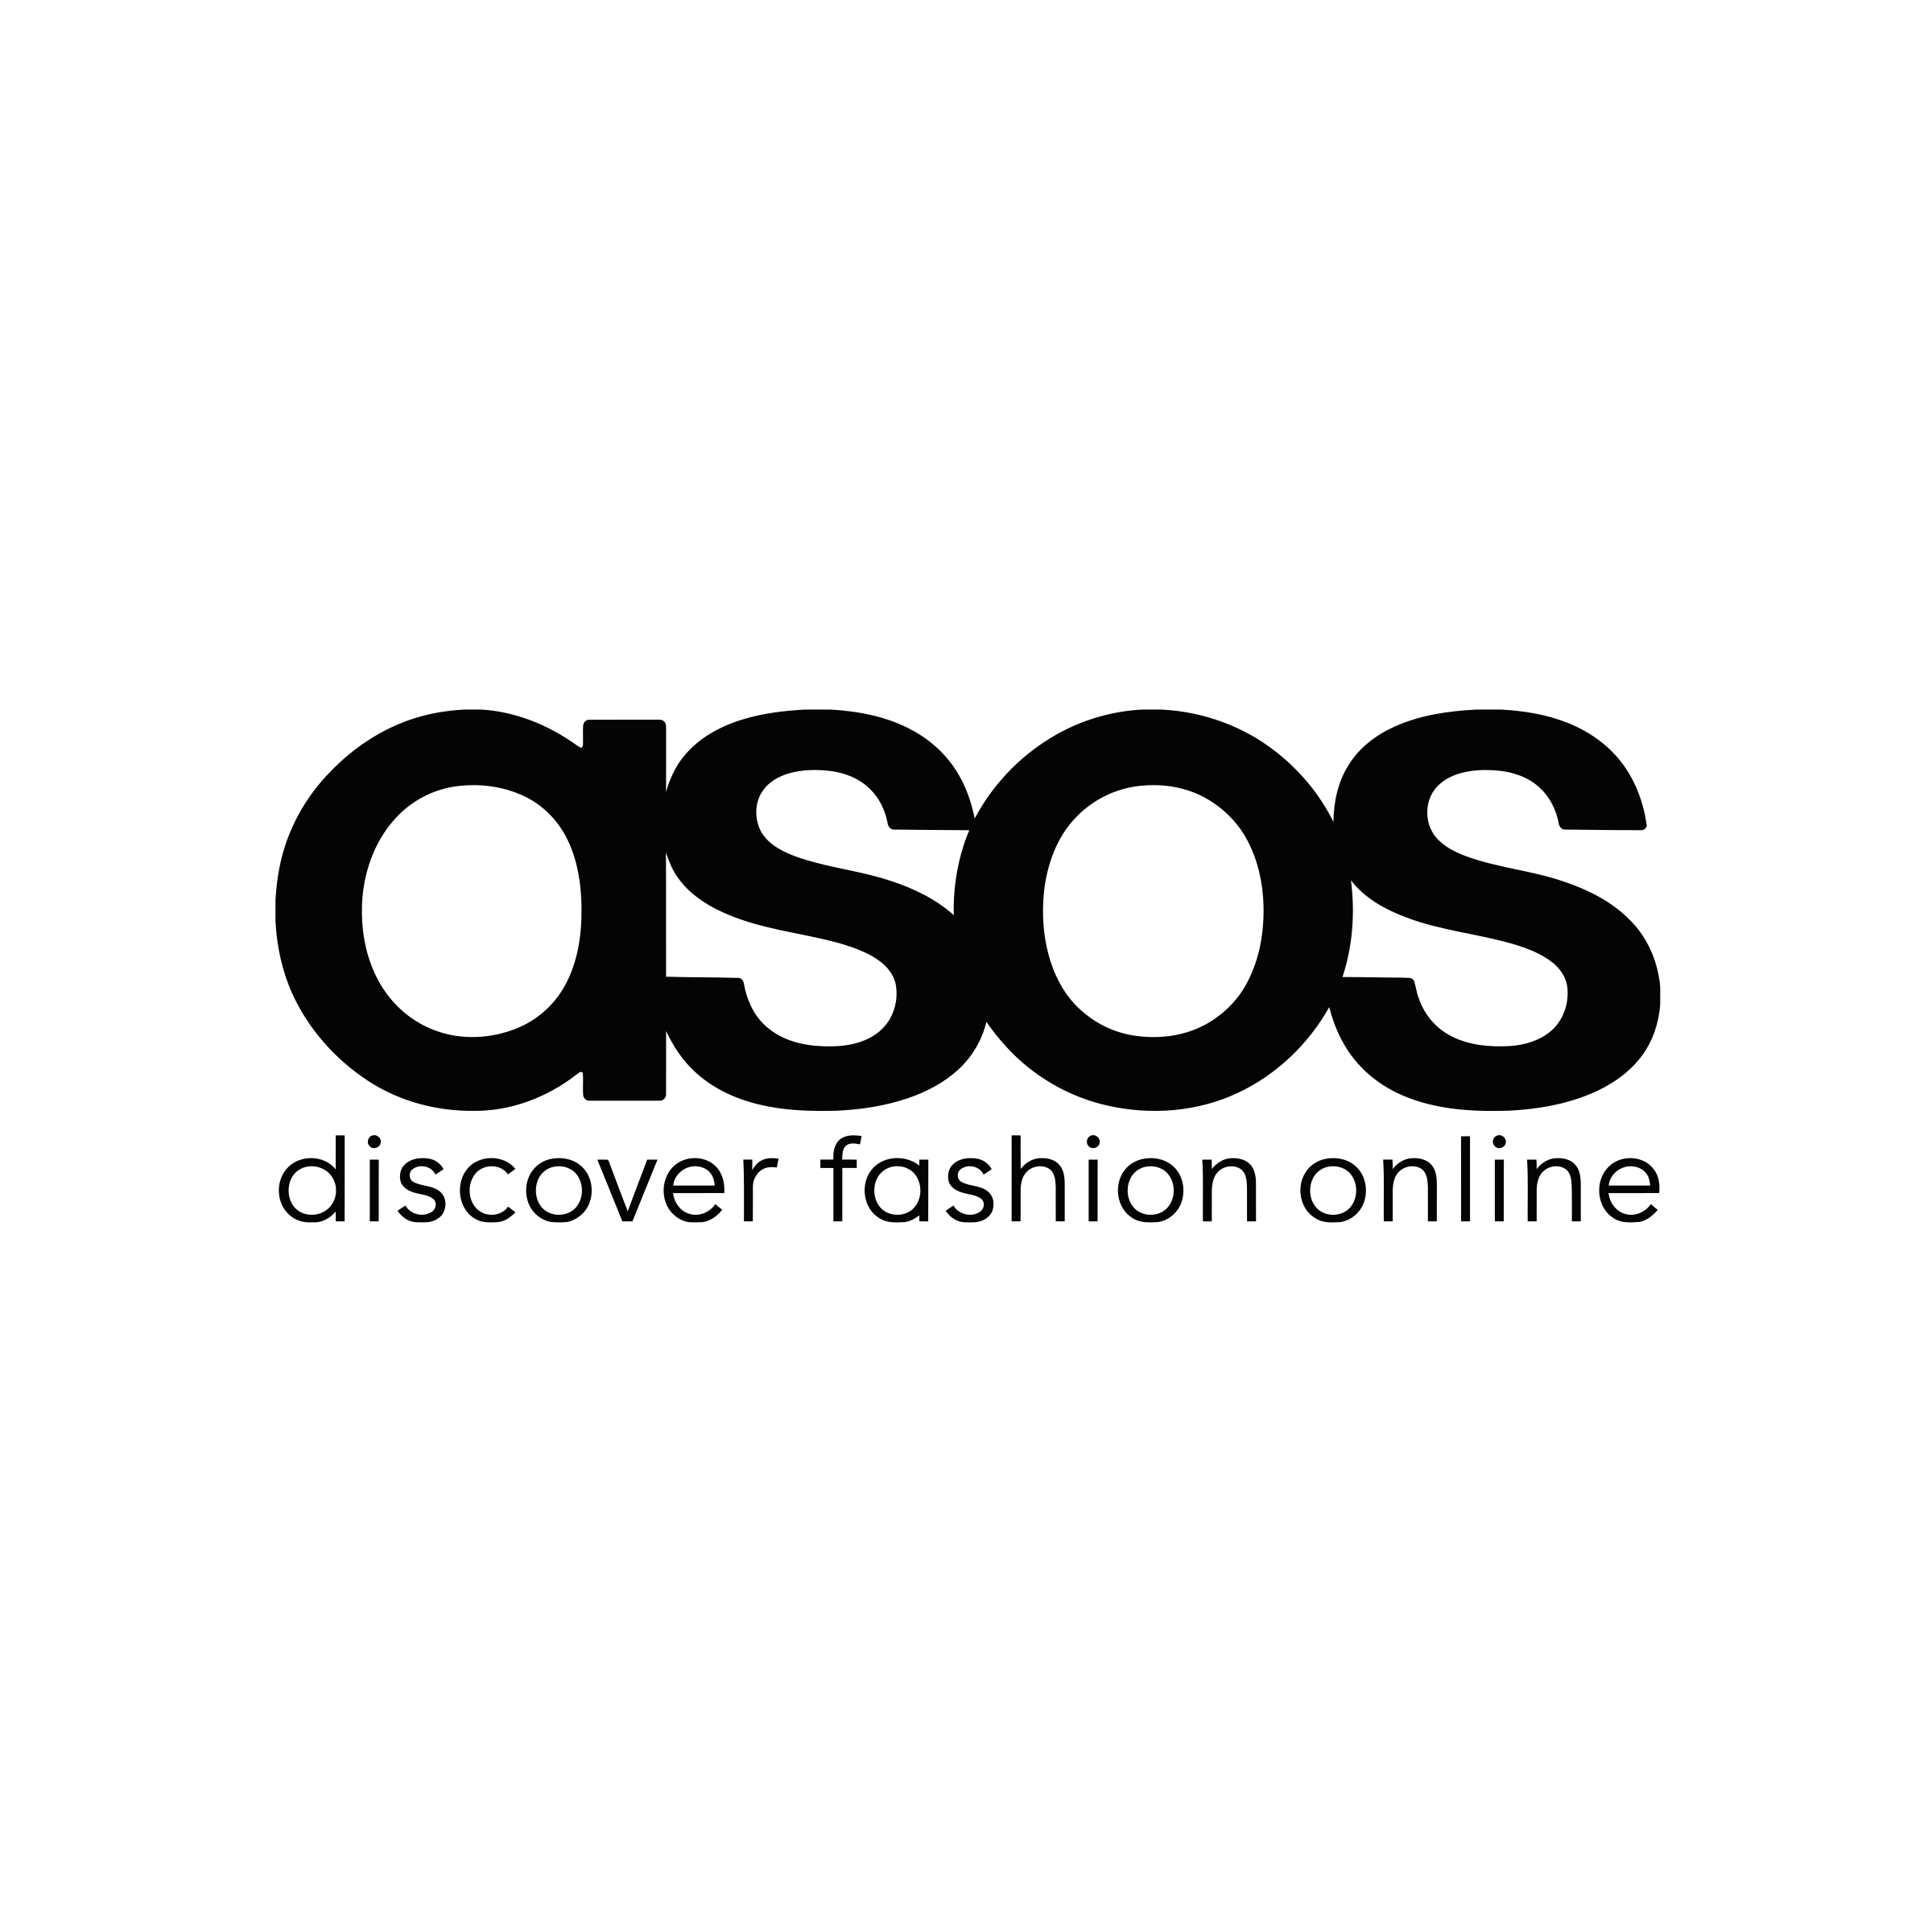 Asos.com Logo - ASOS Logo PNG Transparent & SVG Vector - Freebie Supply